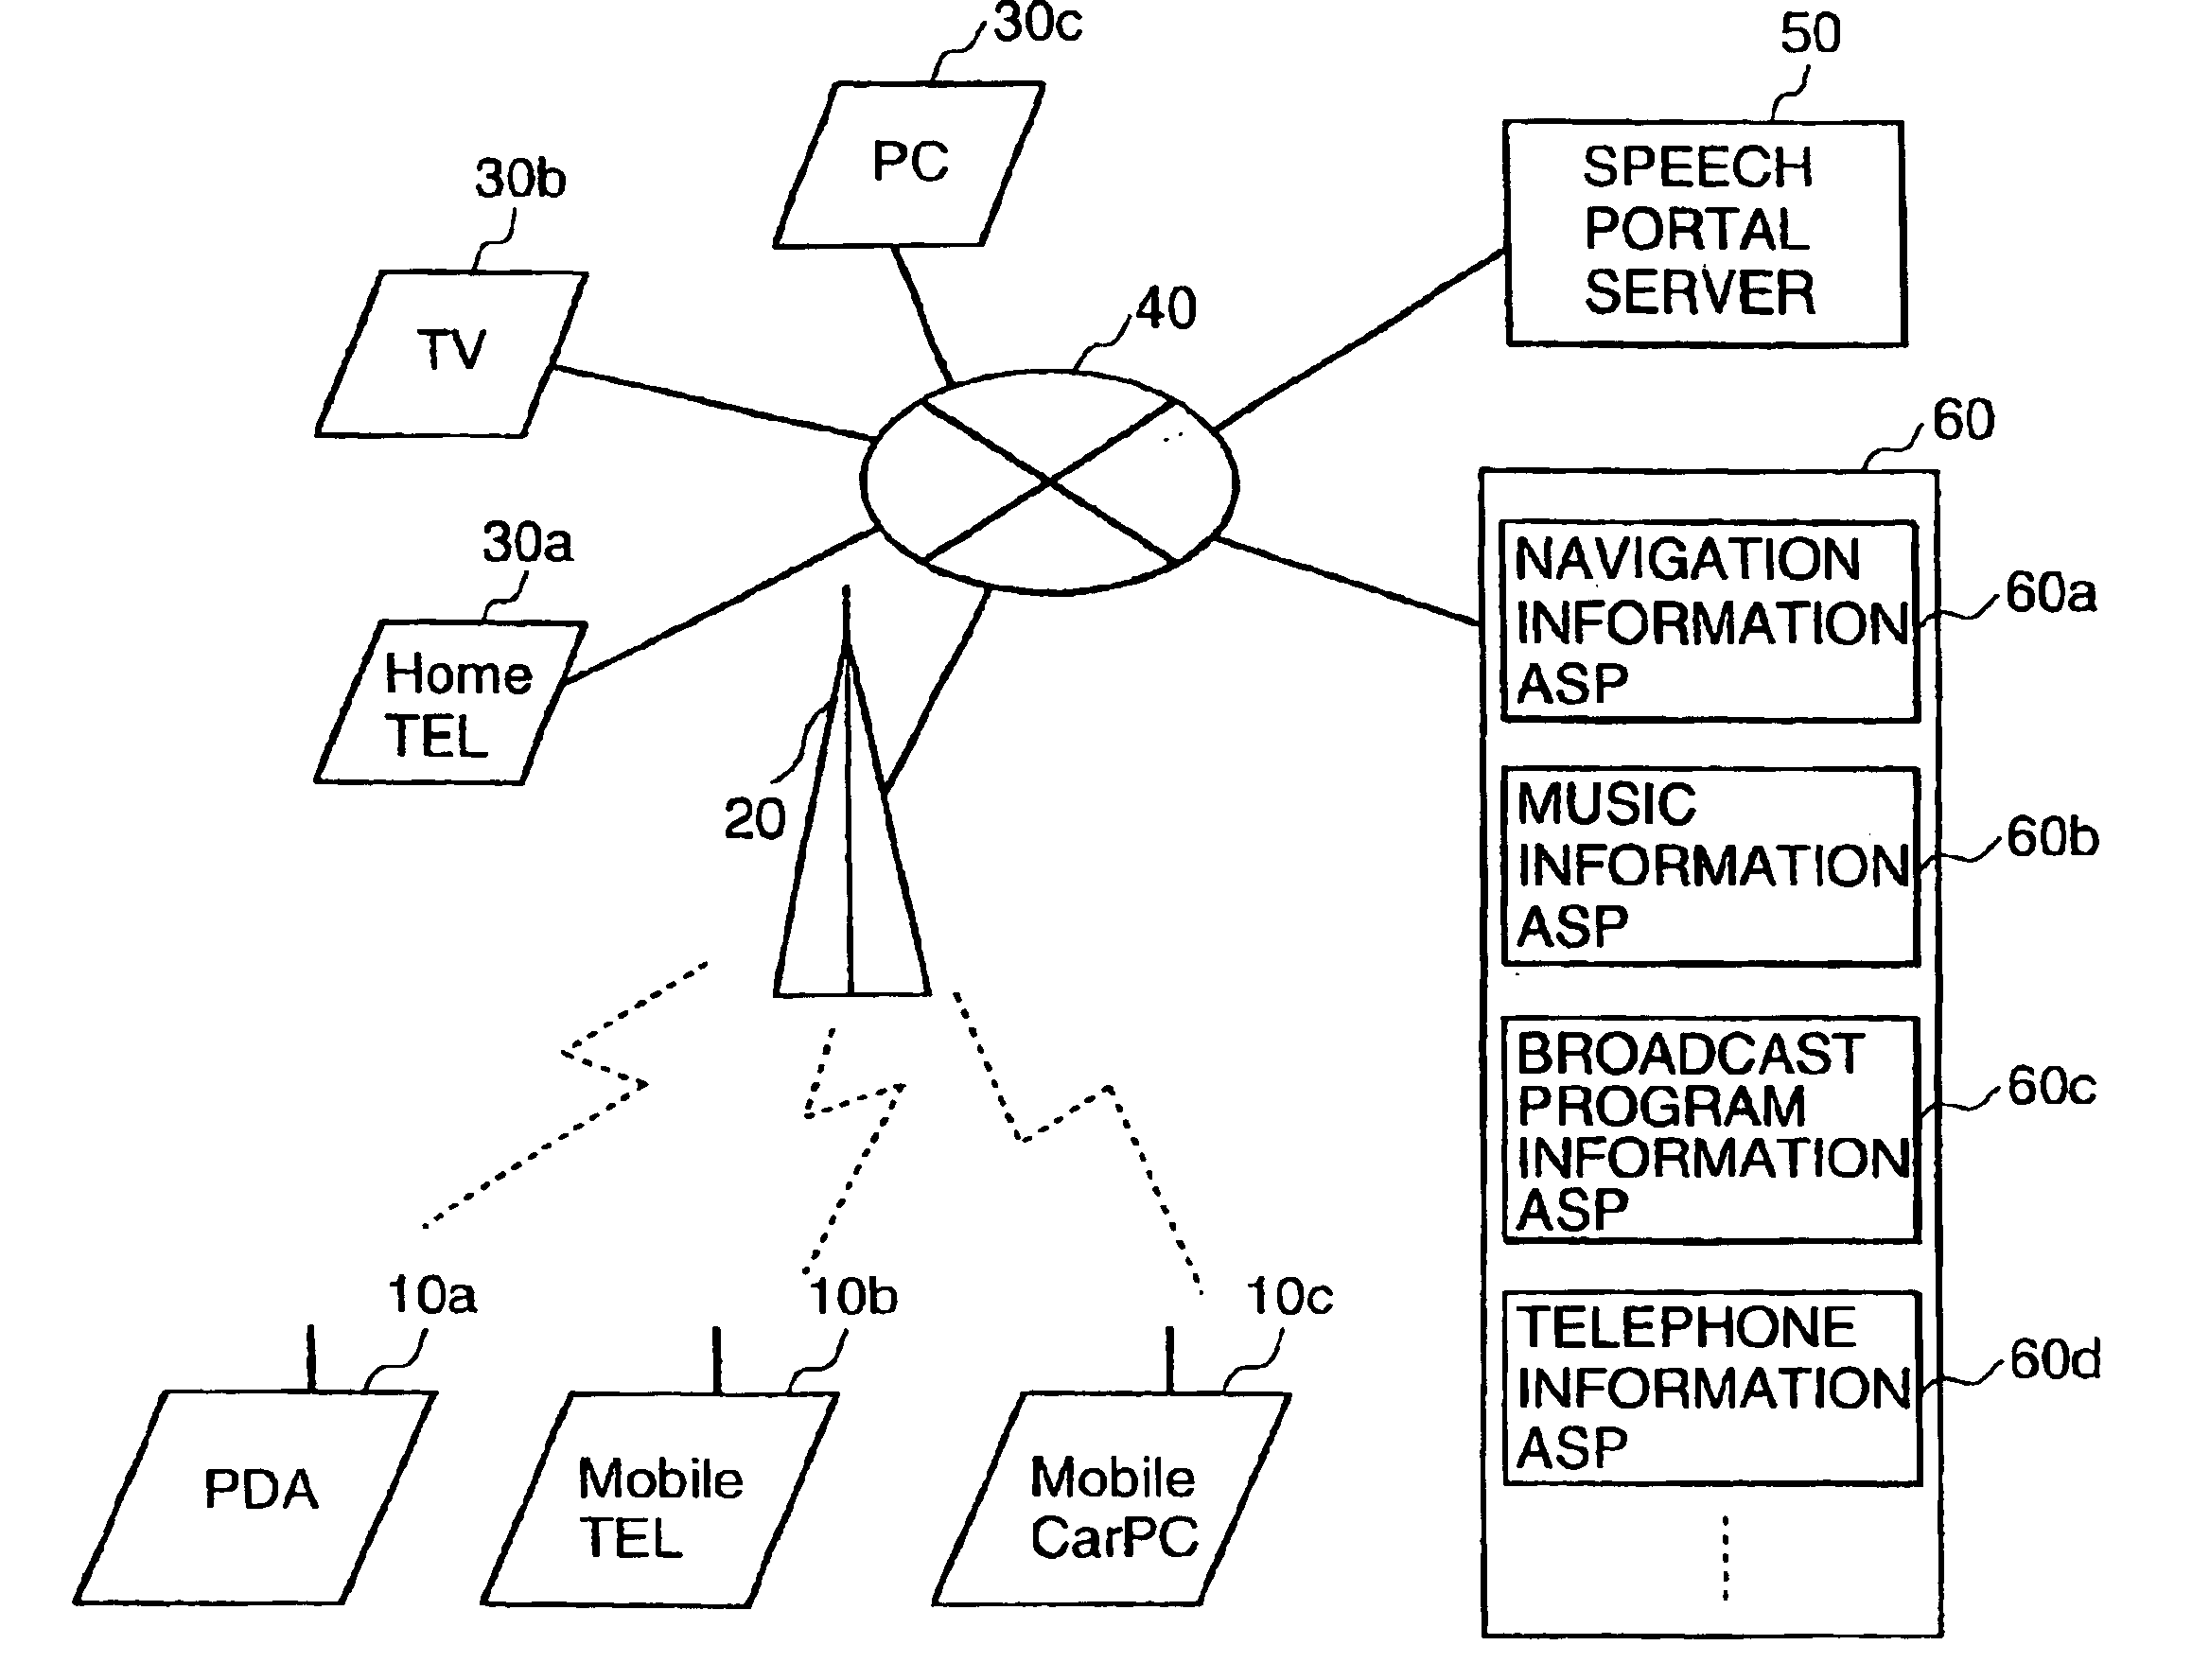 Speech input system, speech portal server, and speech input terminal